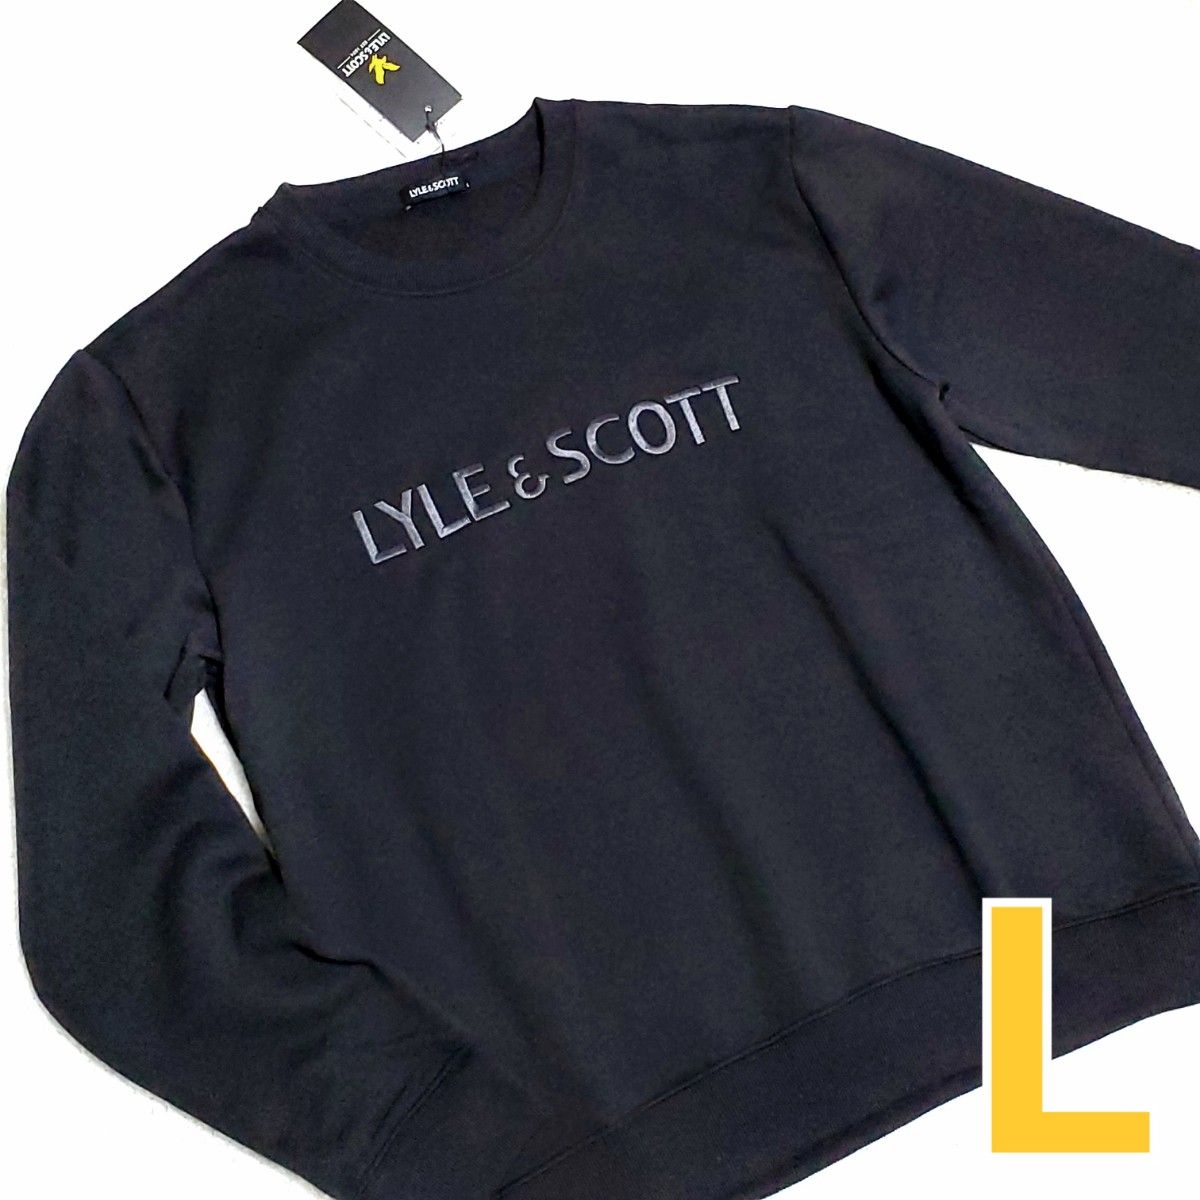 LYLE&SCOTT ライルアンドスコット スウェット トレーナー 裏起毛 新品 メンズ 紳士 Lサイズ 黒 ブラック 長袖 刺繍